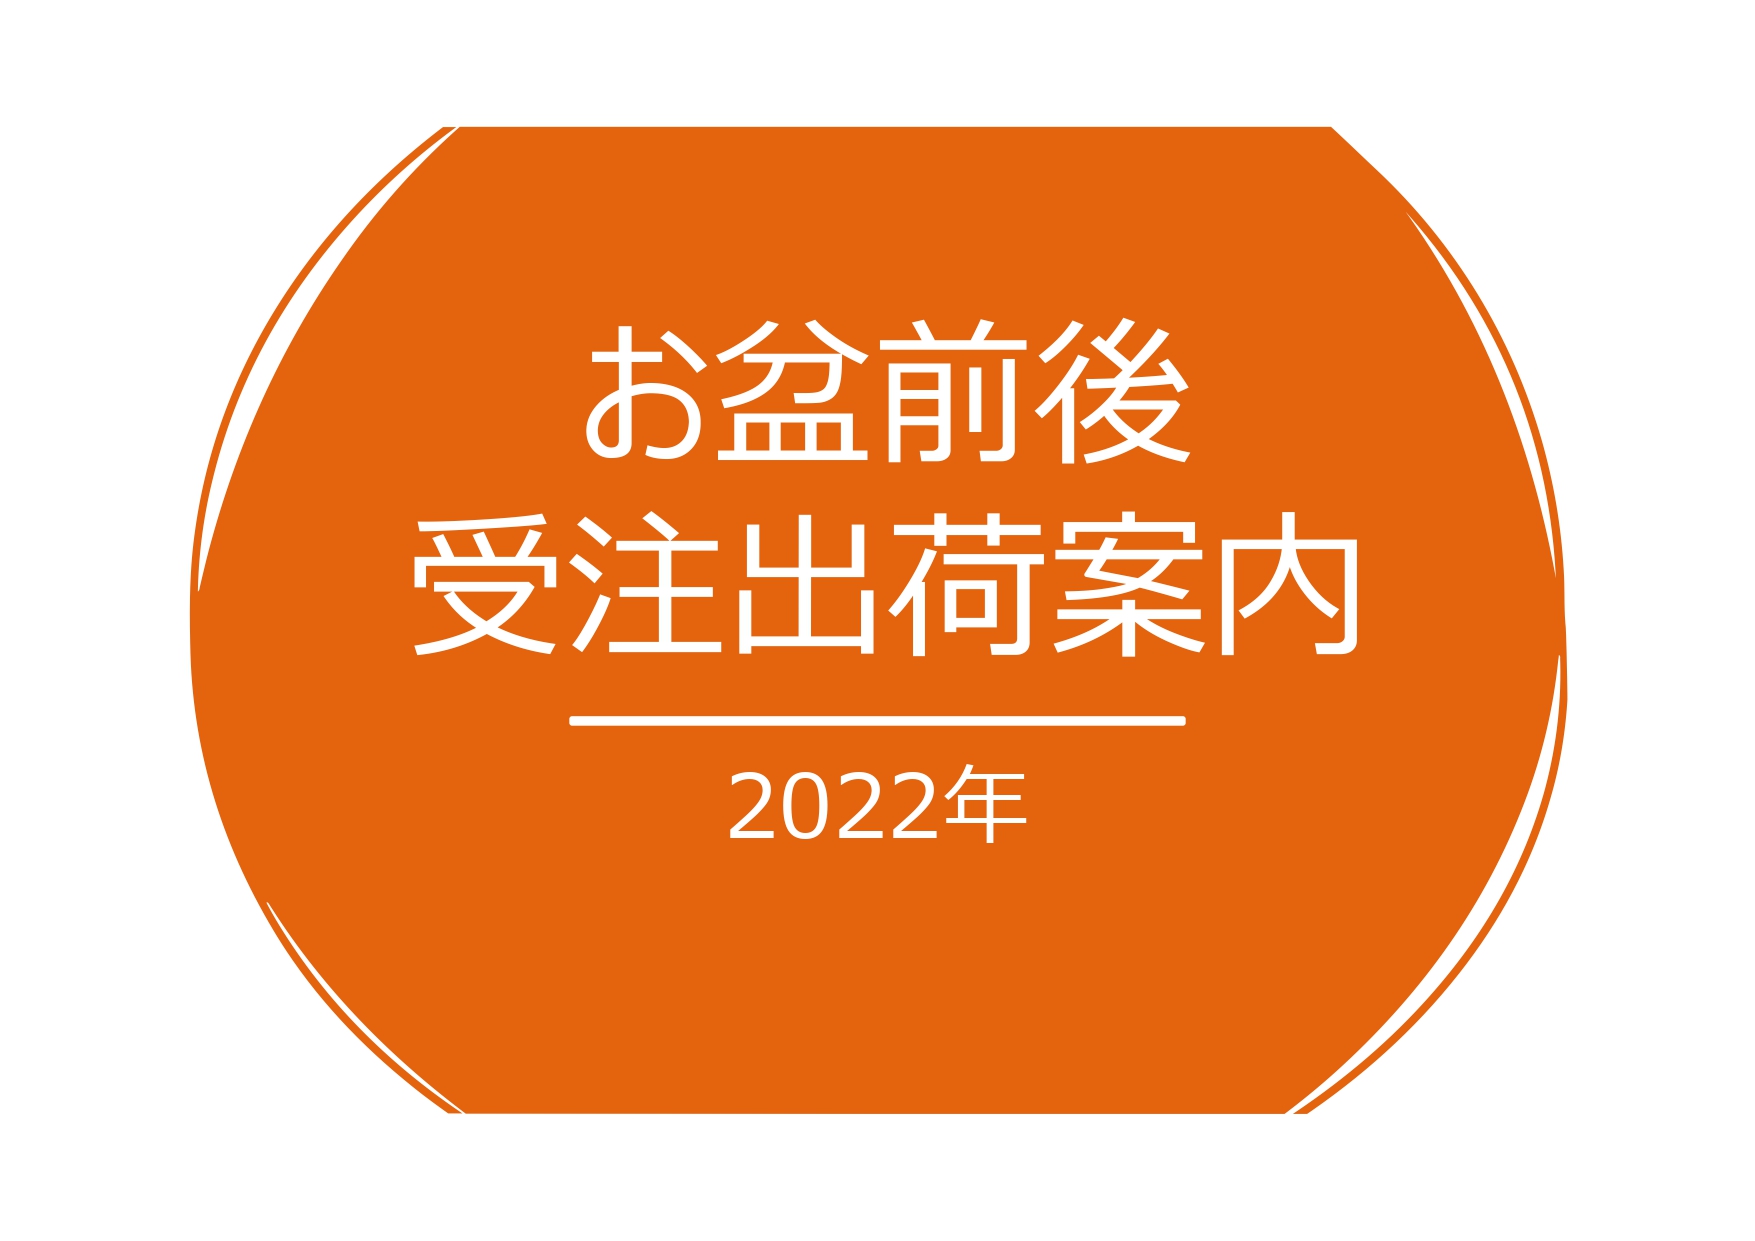 2022年07月26日／2022年 お盆期間の受注･出荷体制のお知らせ